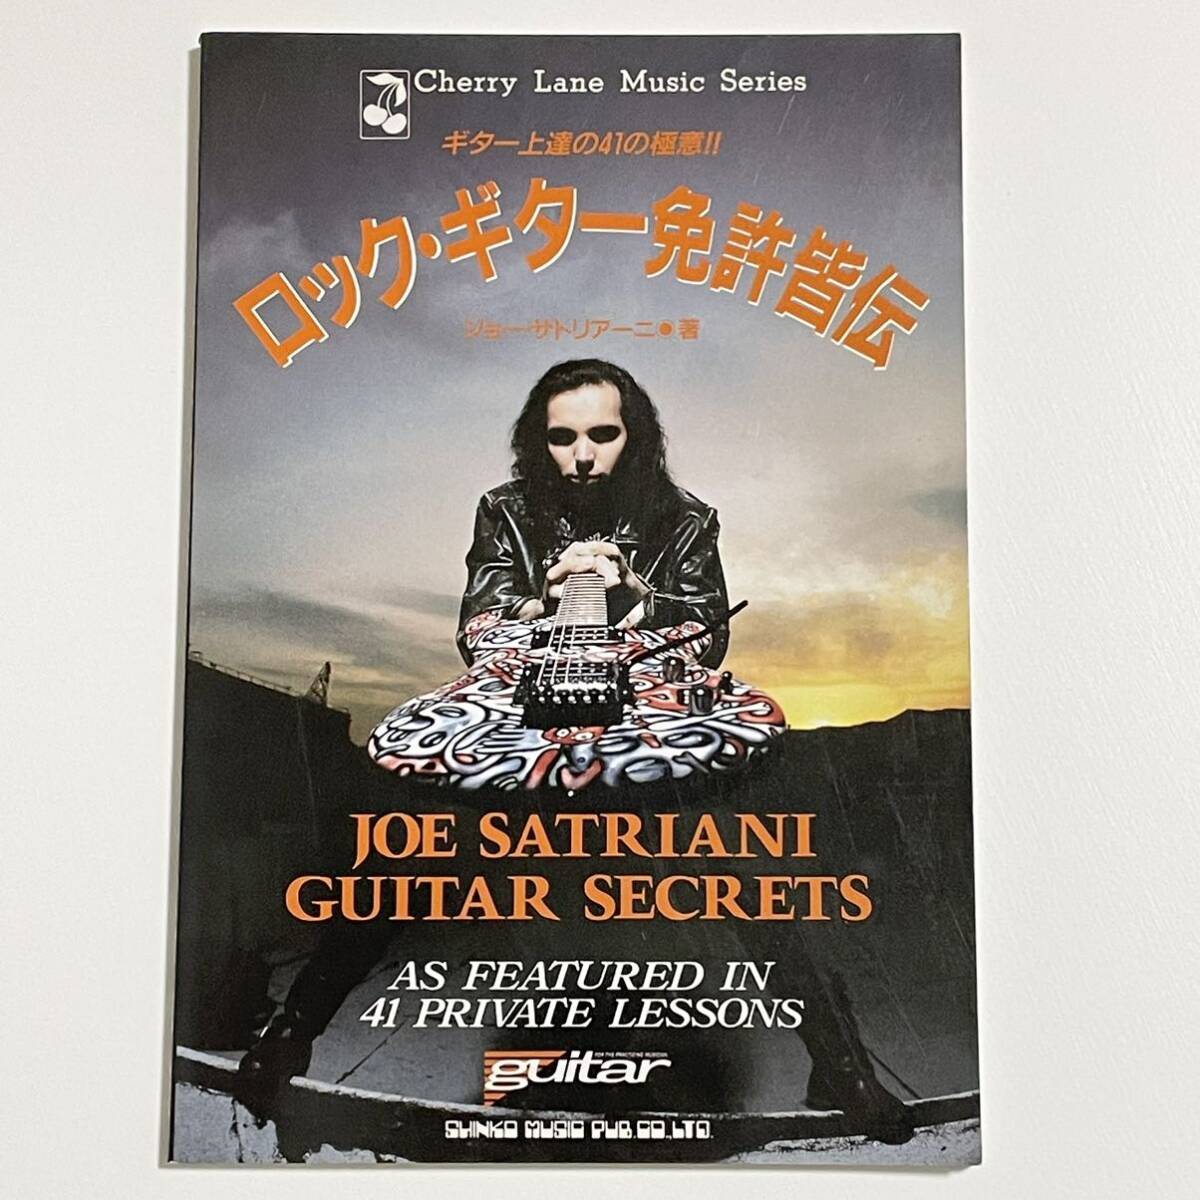 ロック・ギター免許皆伝 ジョー・サトリアーニ Joe Satriani Guitar Secrets (Cherry Lane Music Series)の画像1